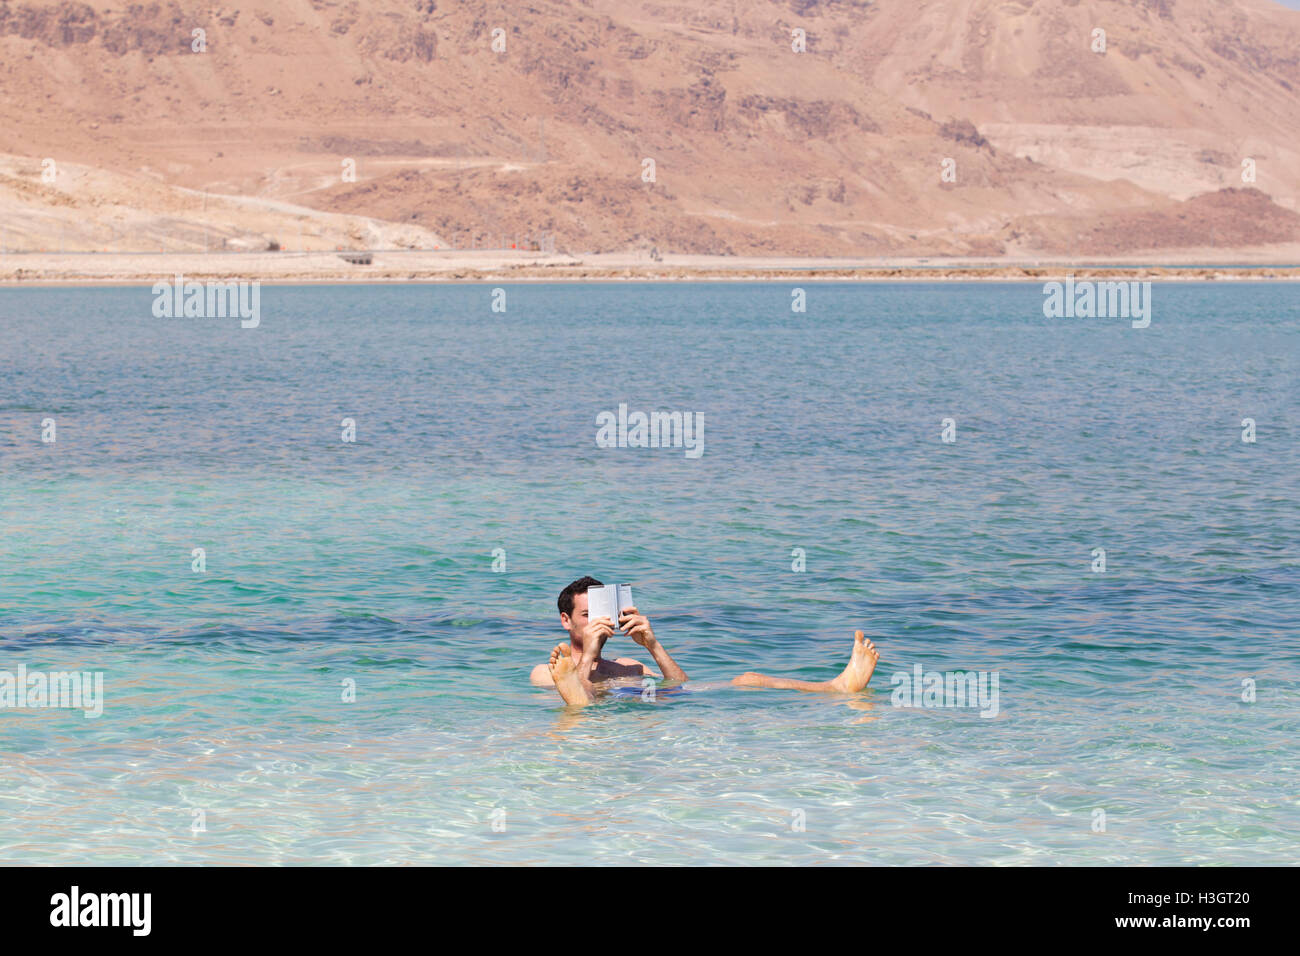 Un touriste lisant un livre en se baignant dans le lac salé de la mer Morte. Ein Bokek, Israël. Banque D'Images